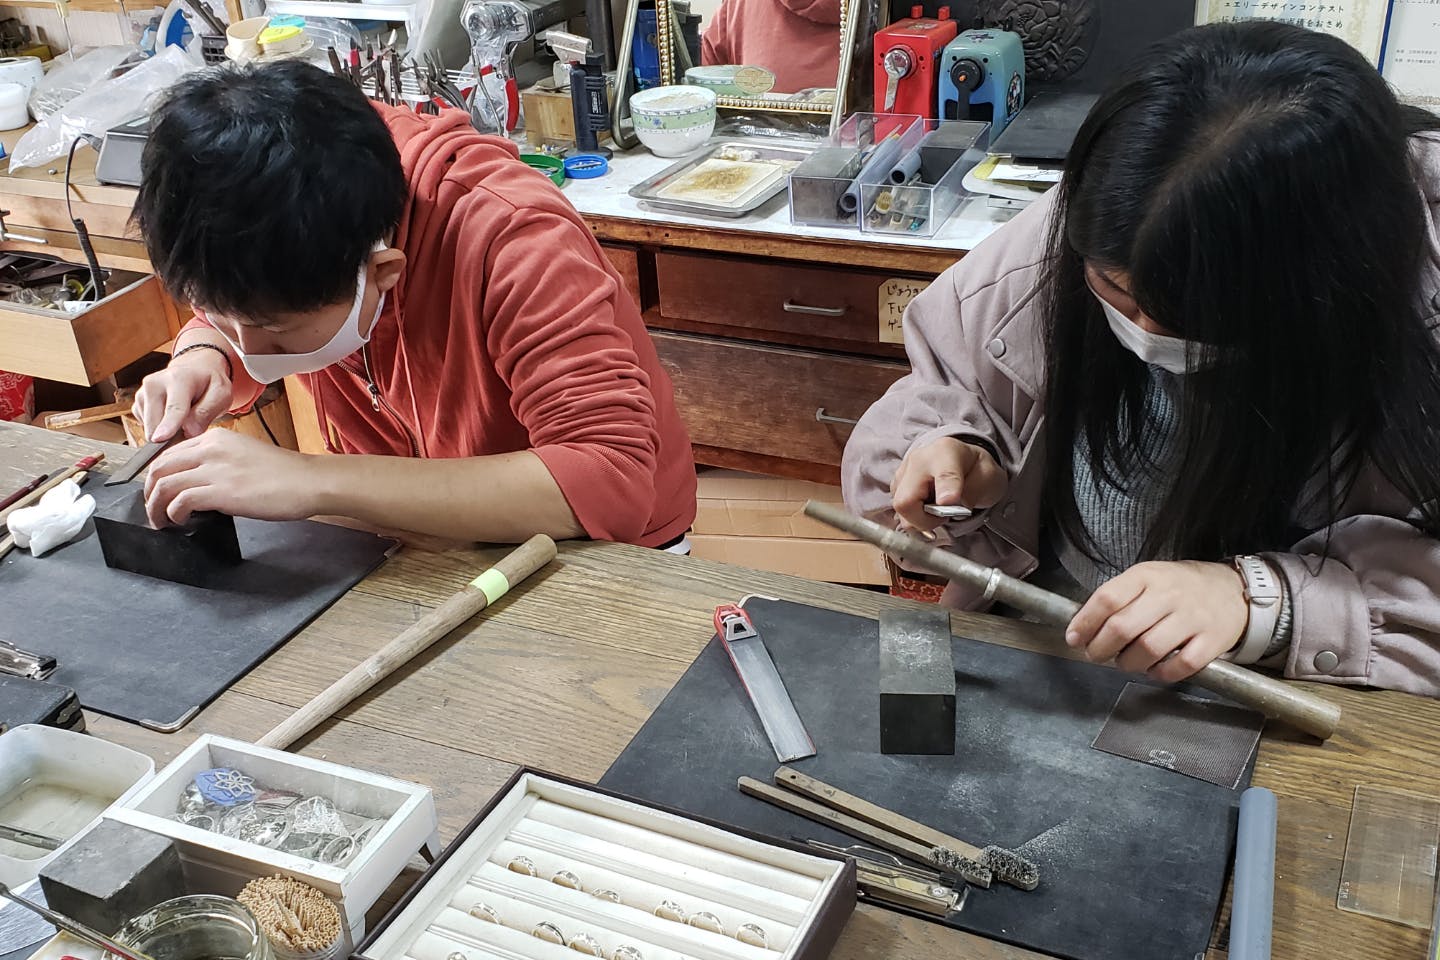 宮城 仙台 シルバーアクセサリー 受賞歴多数の講師が教える 純銀粘土でアクセサリー制作体験 アソビュー